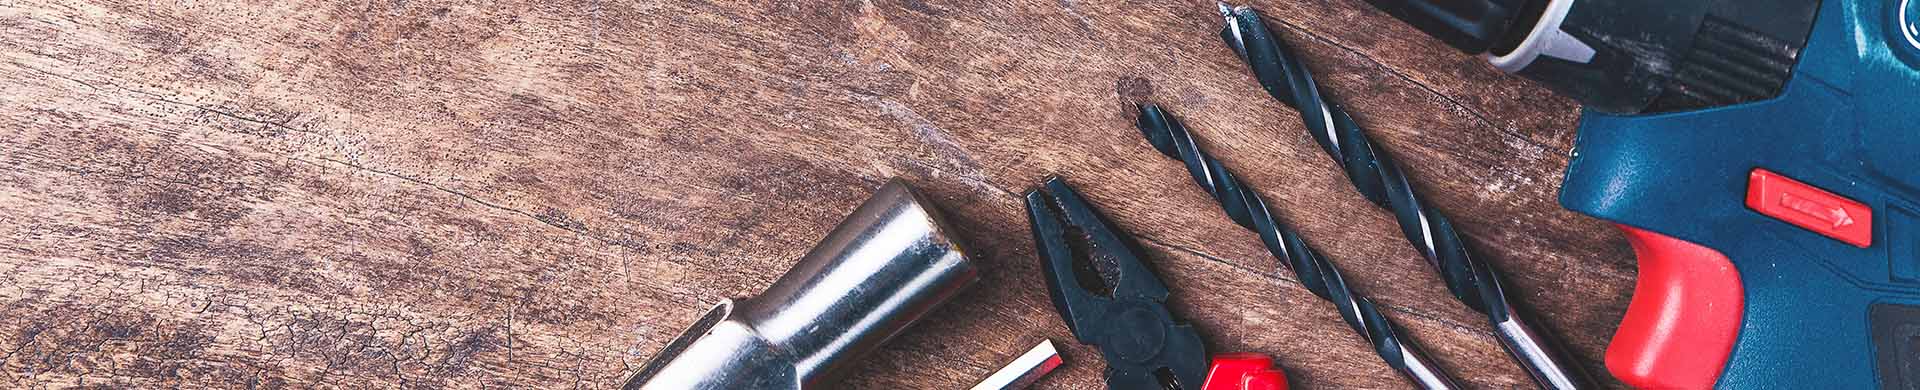 DIY Tools on Wood